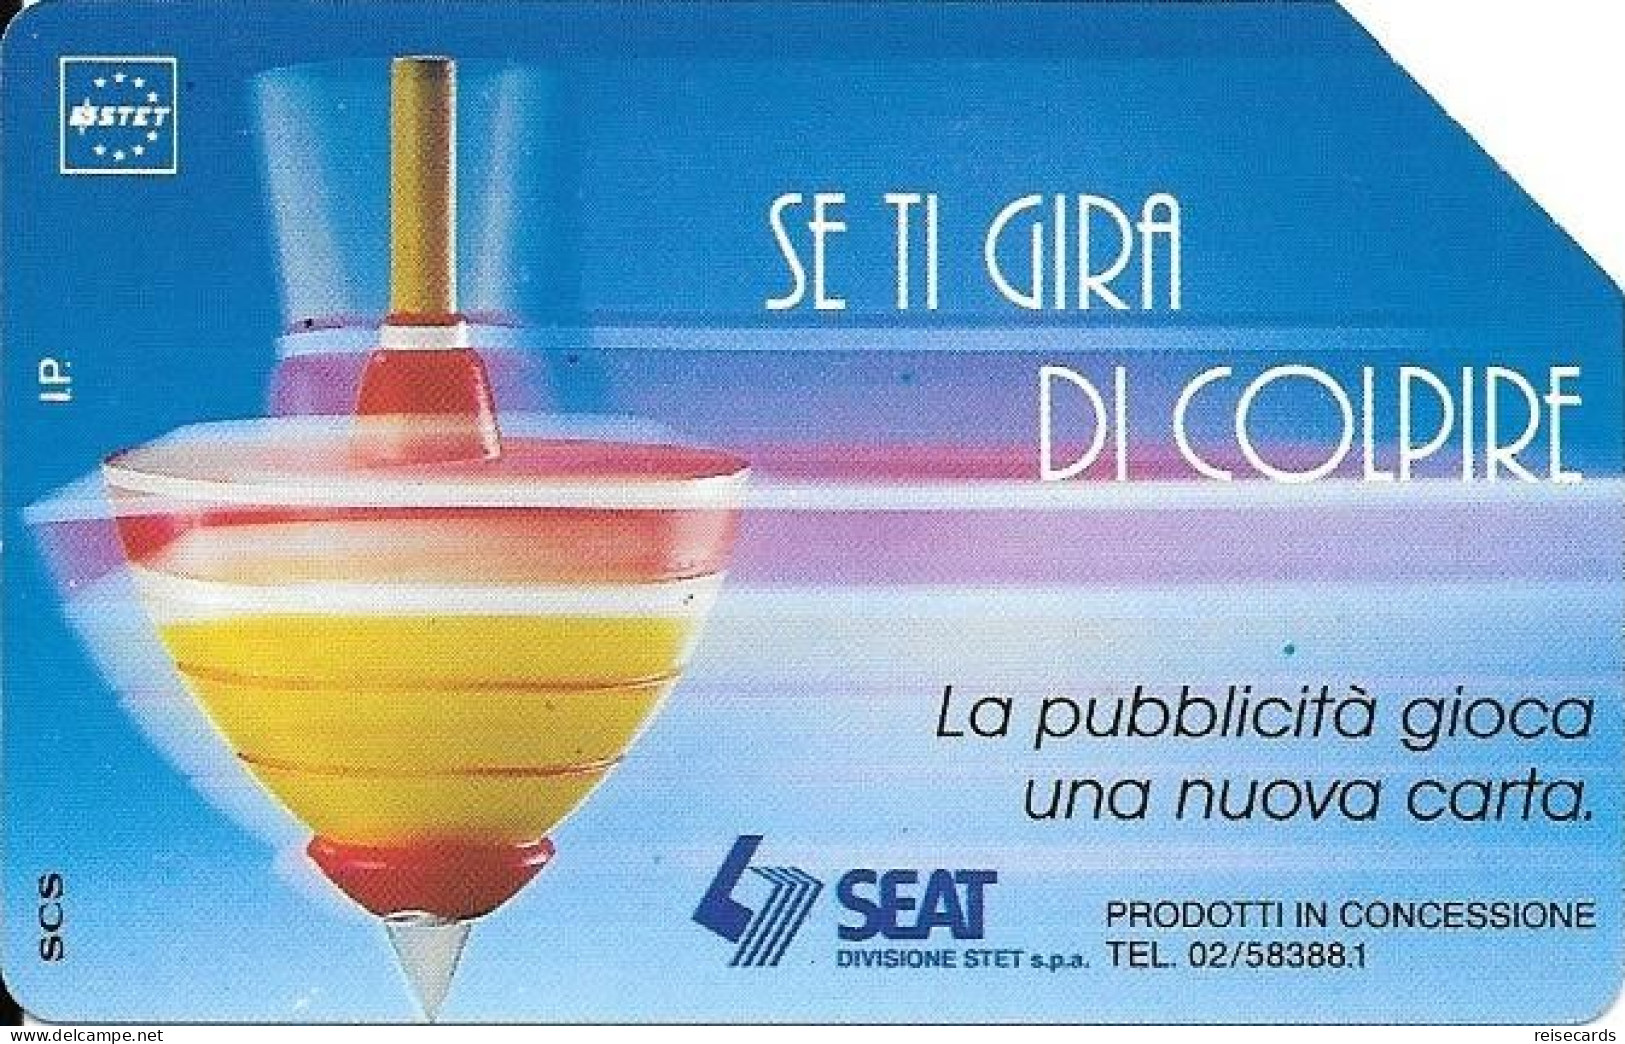 Italy: Telecom Italia SIP - SEAT Se Ti Gira Di Colpire - Public Advertising